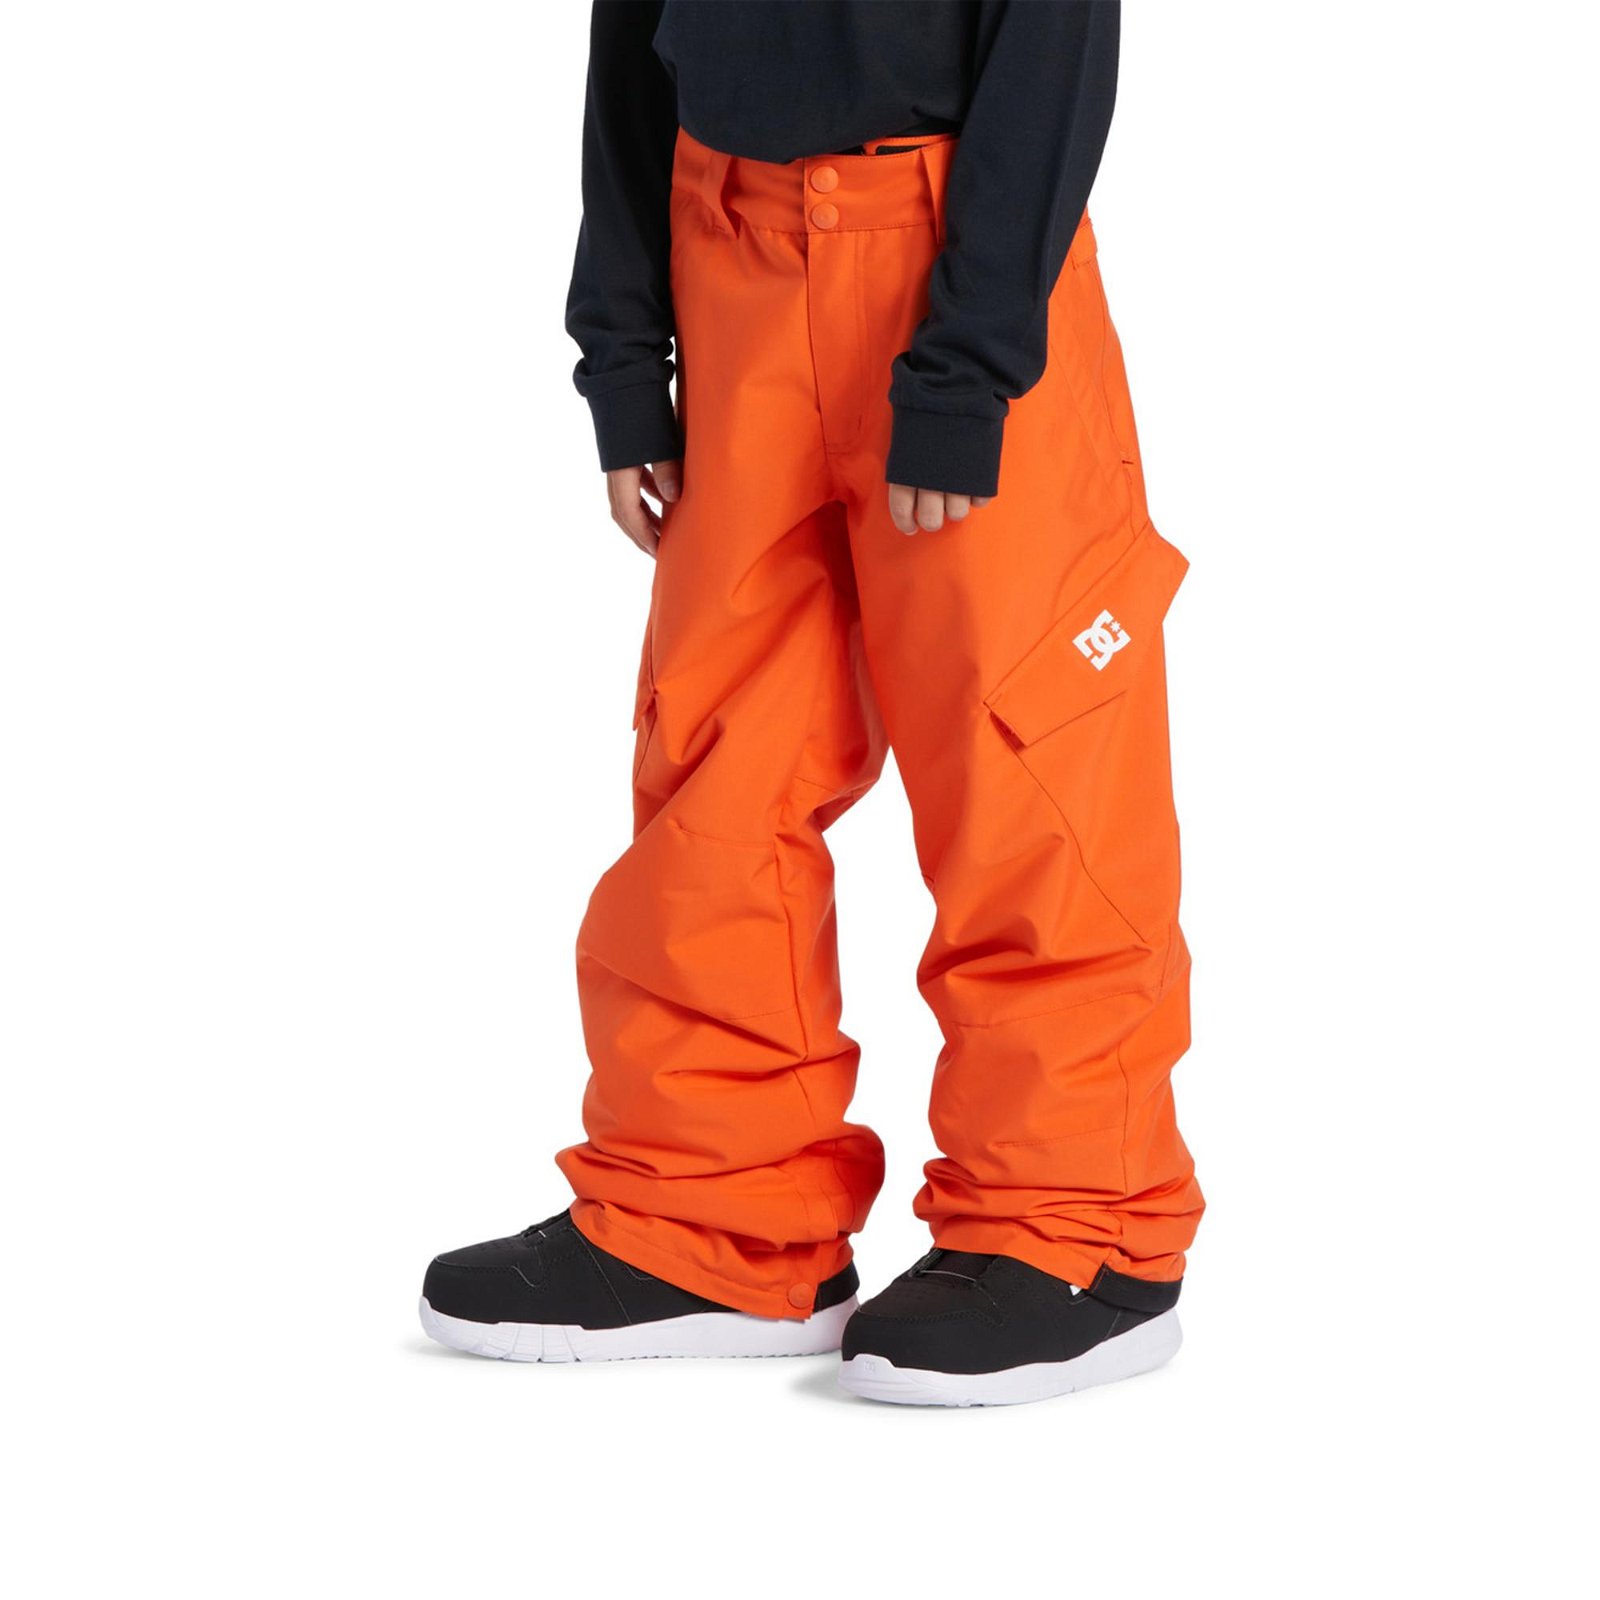 DC Banshee Çocuk Kayak/Snowboard Pantolonu